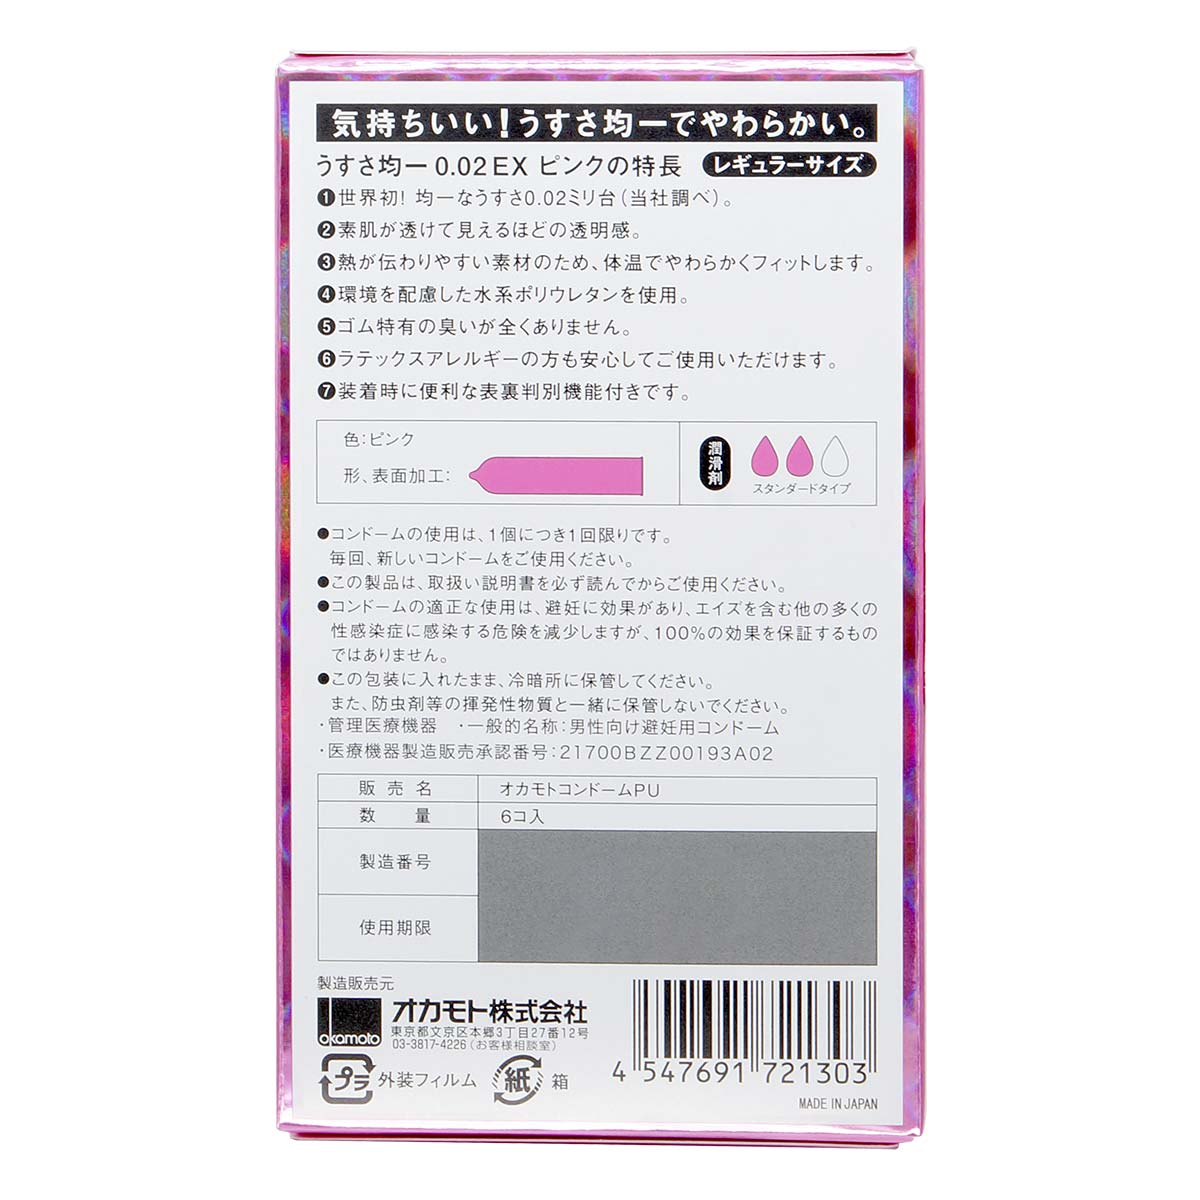 冈本 薄度均一 0.02EX (日本版) 粉红色系 6 片装 聚氨酯安全套-p_3